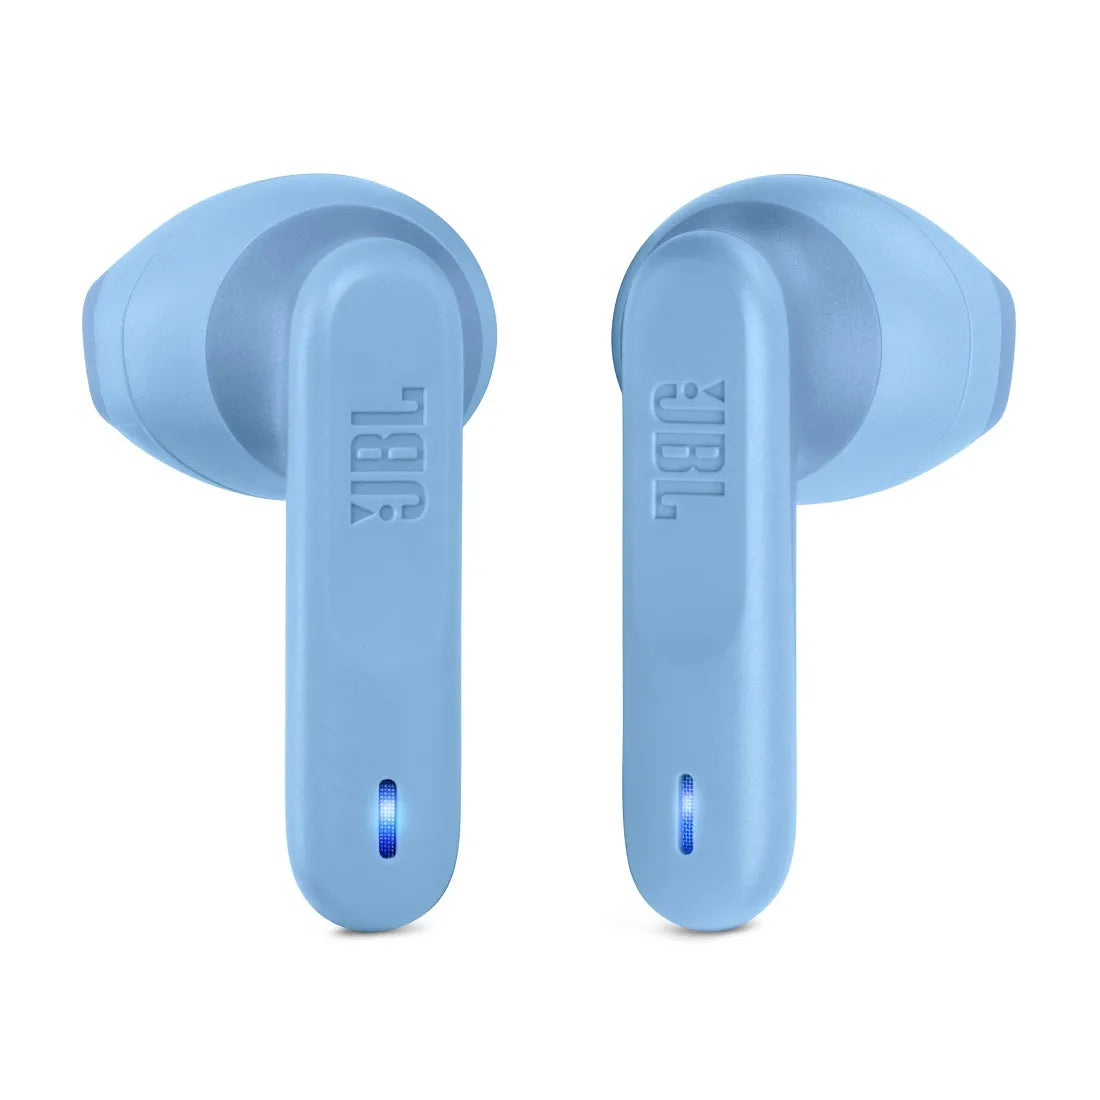 True Wireless sluchátka JBL Wave Flex modrá